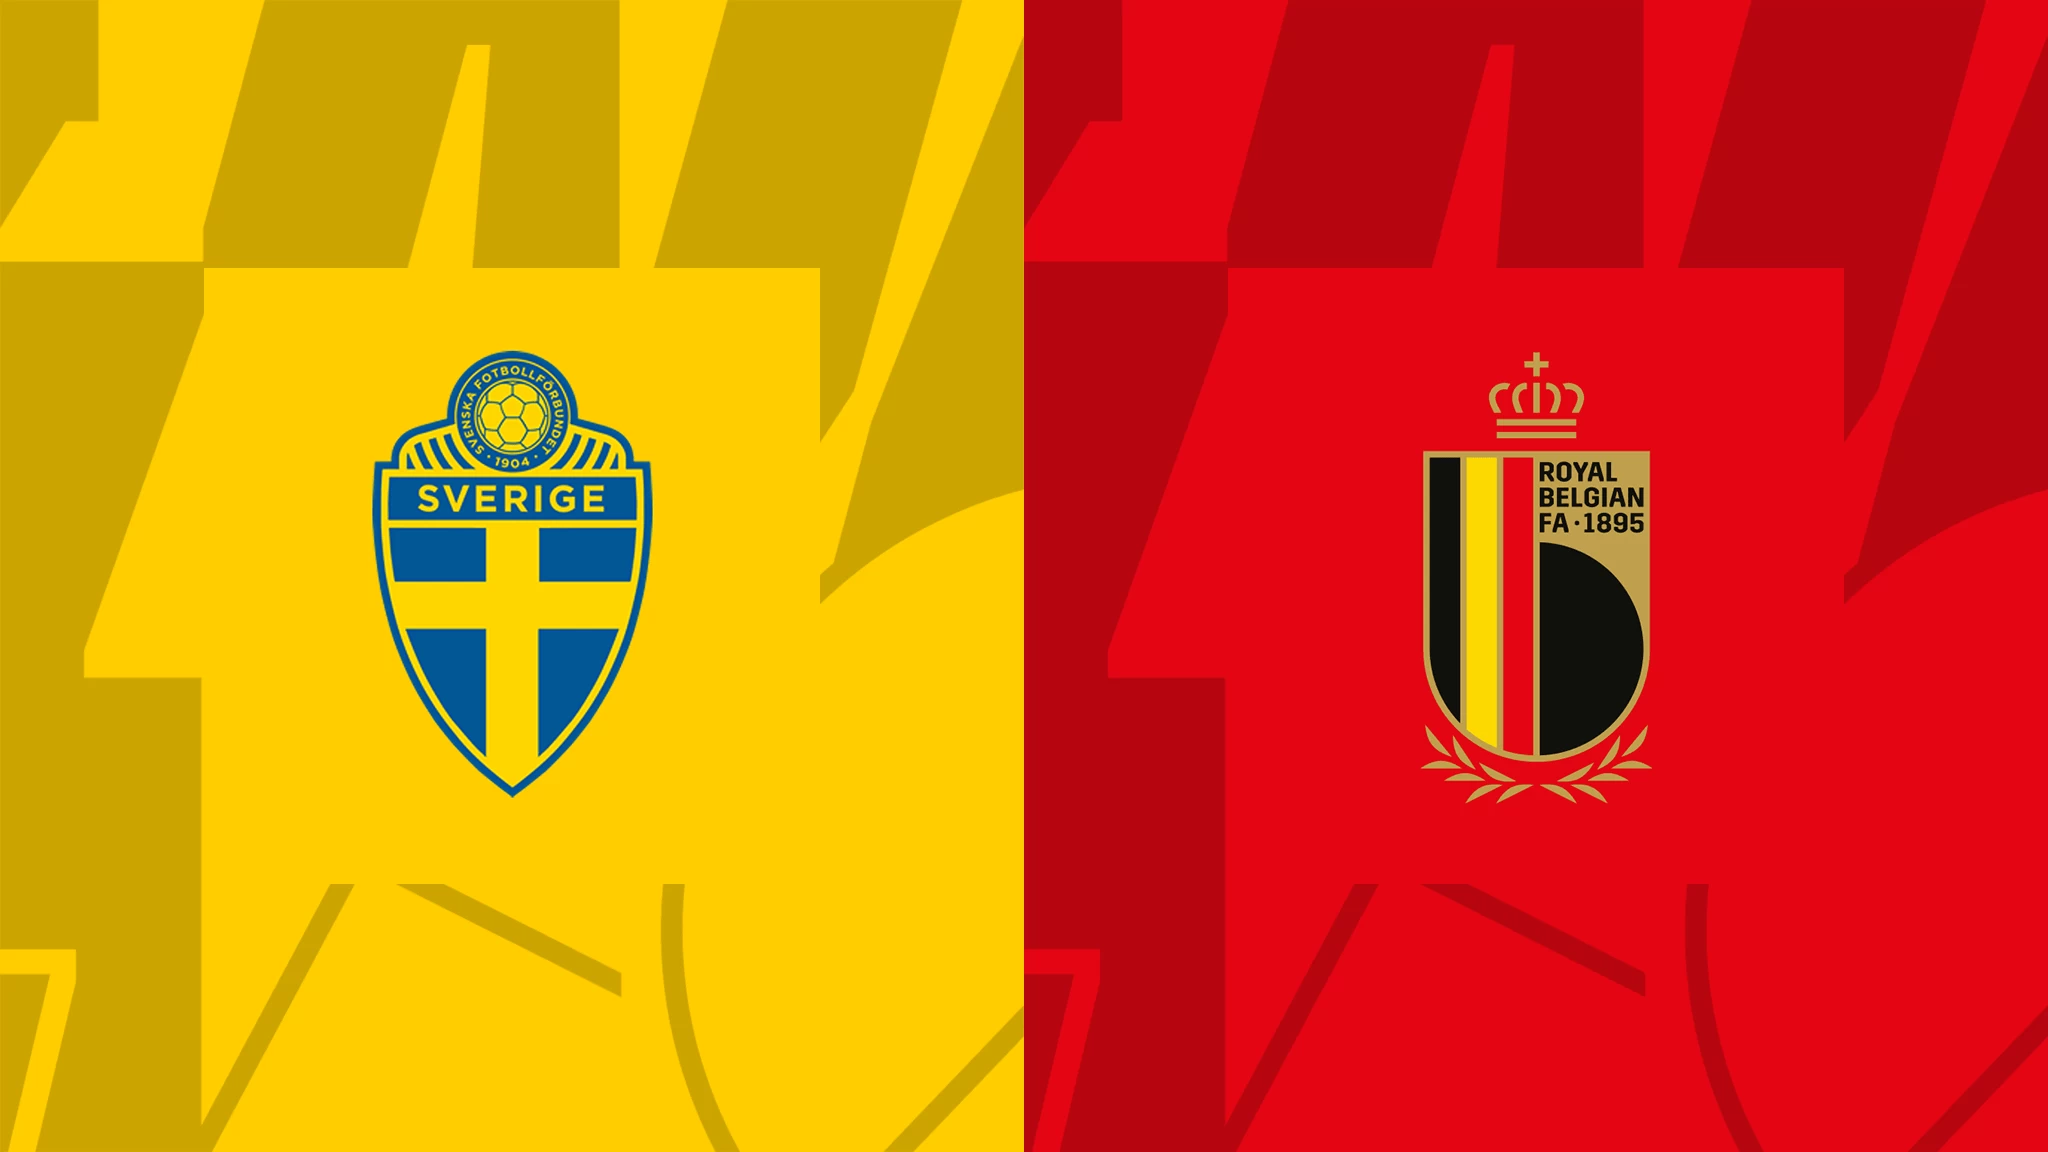 سوئد - بلژیک؛ ترکیب رسمی